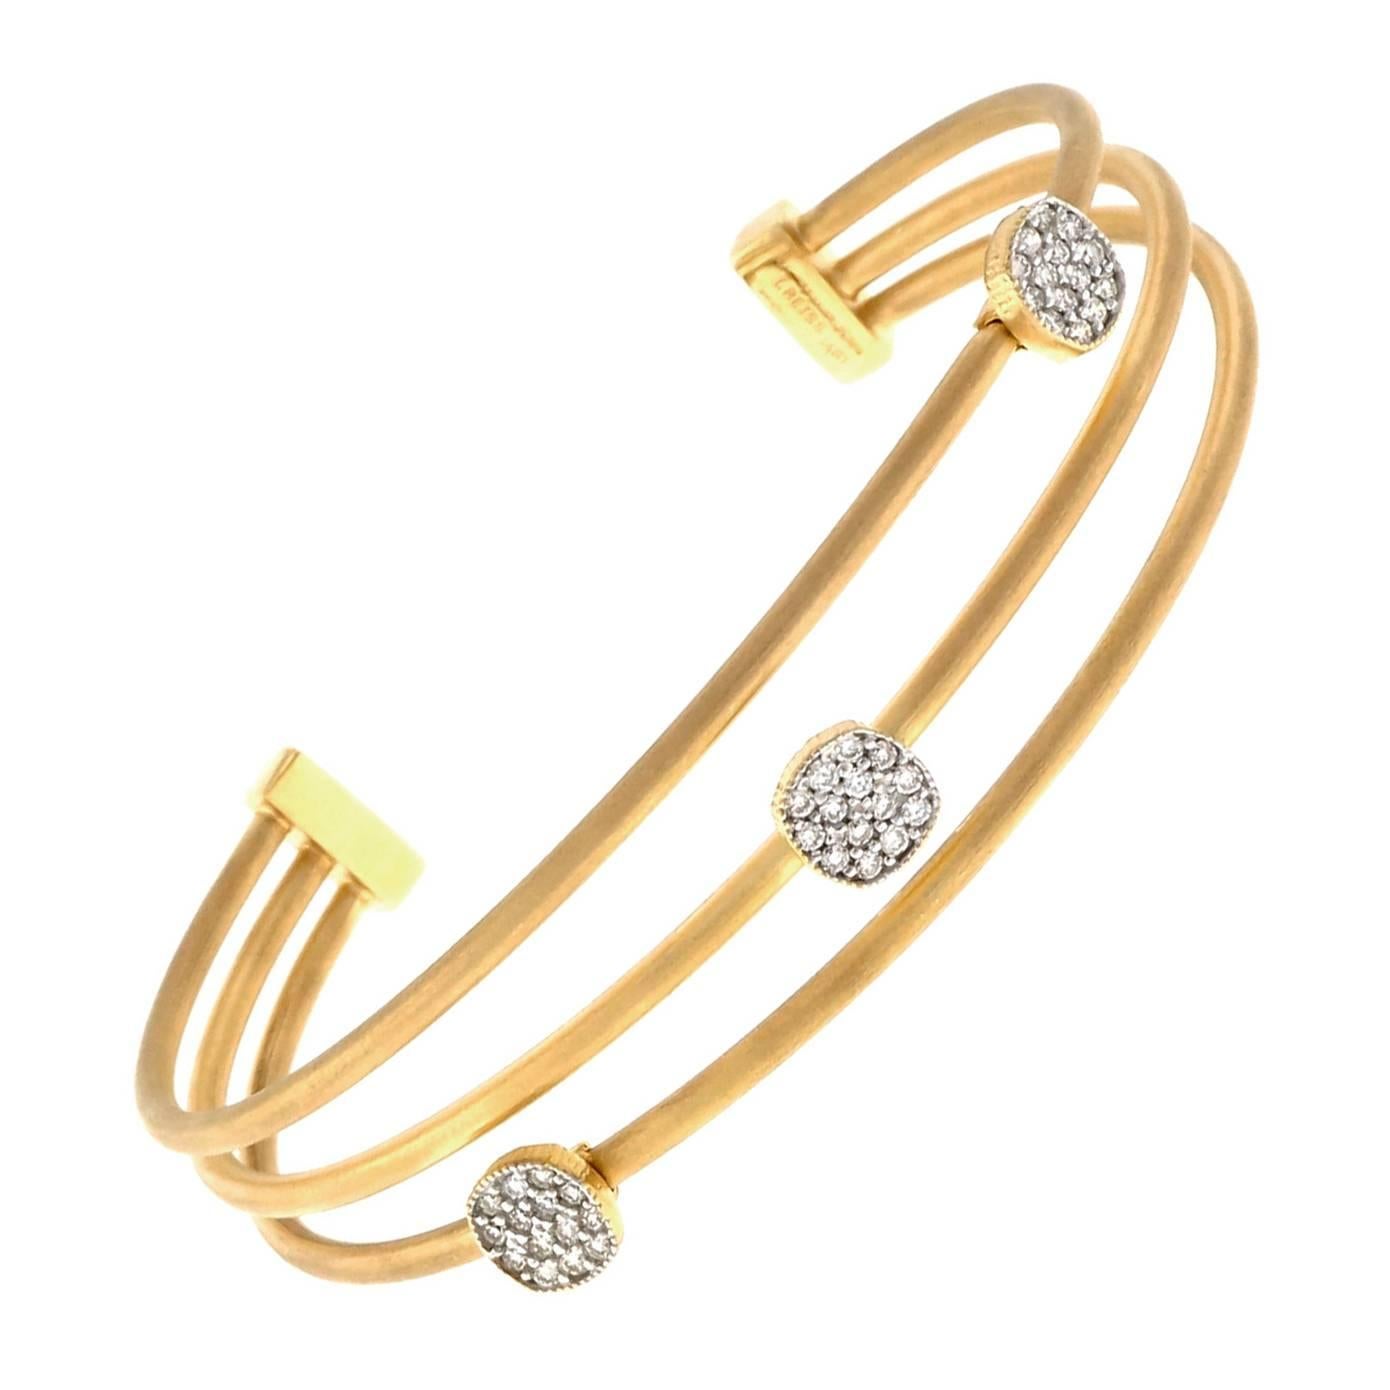 Isaac Reiss Diamond Gold Cuff Bracelet 